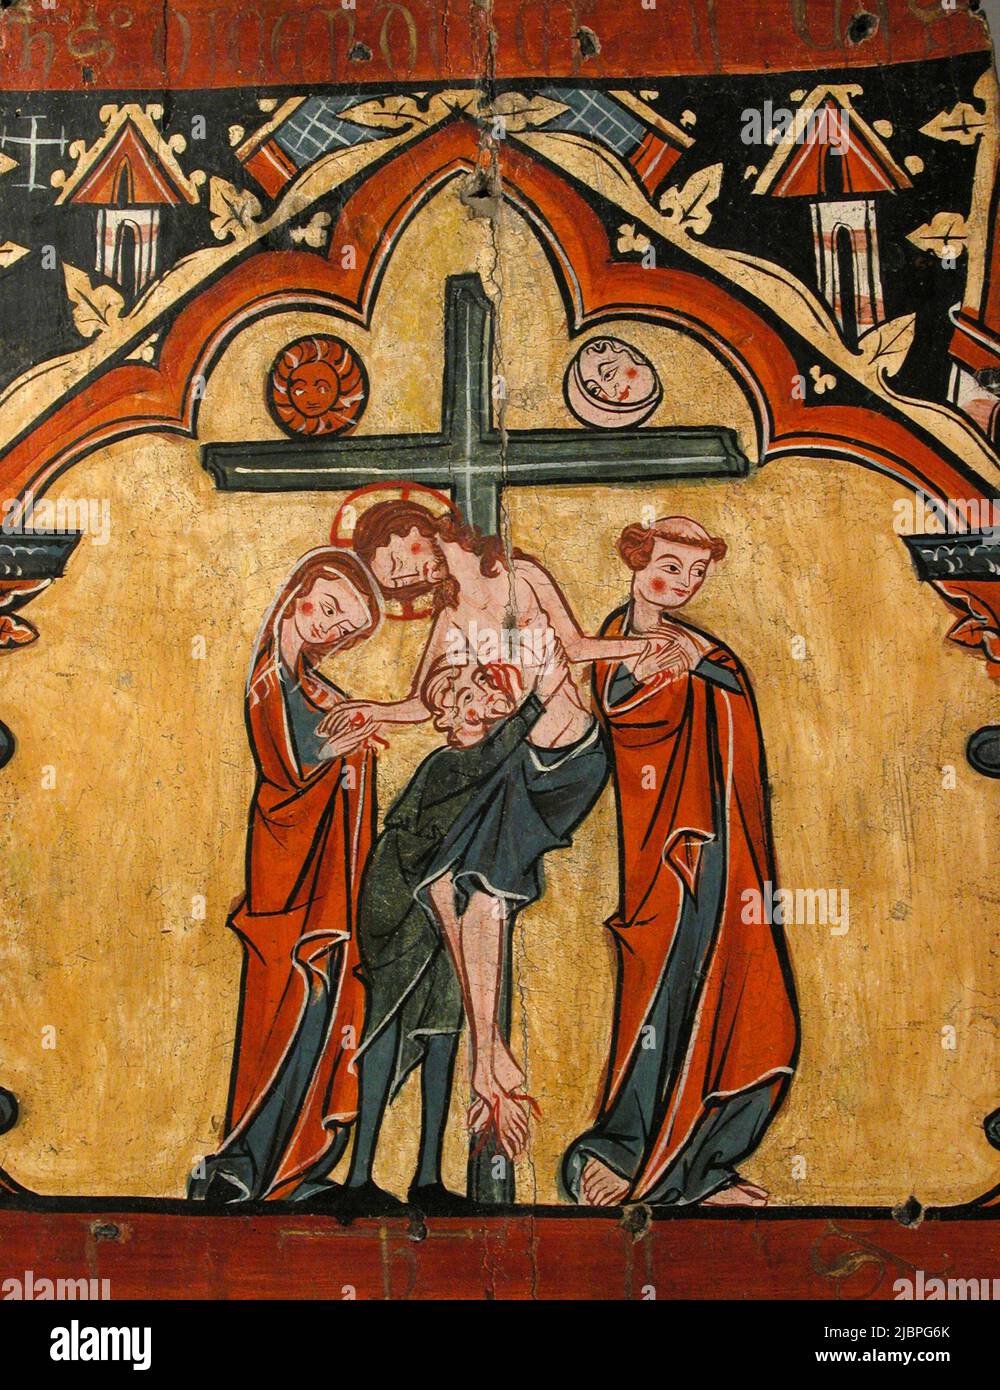 Discesa dalla Croce, da un artista medievale anymous Foto Stock